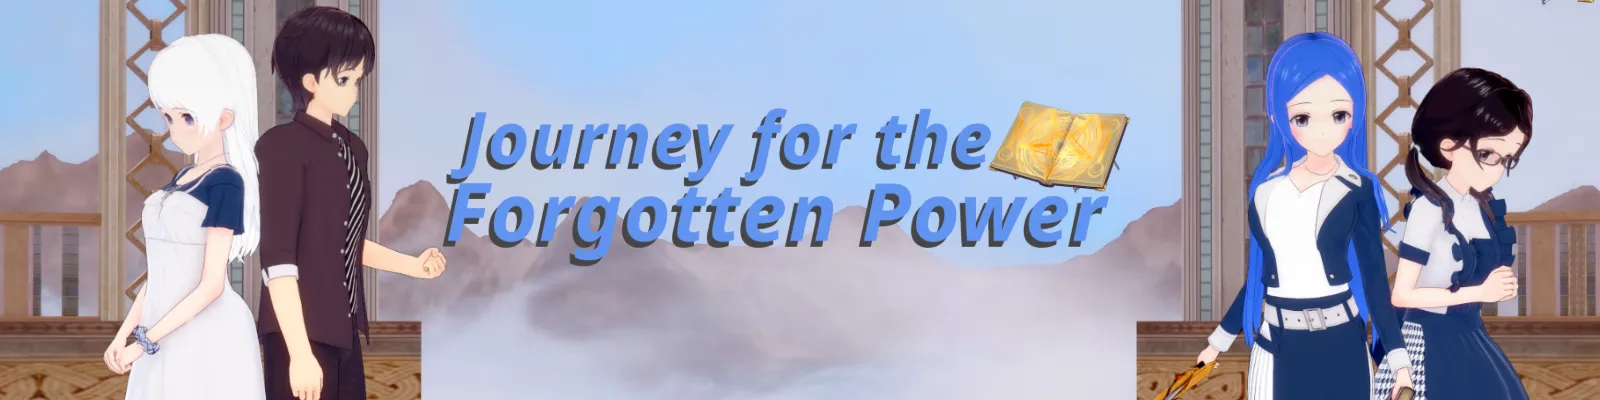 Journey for the Forgotten Power